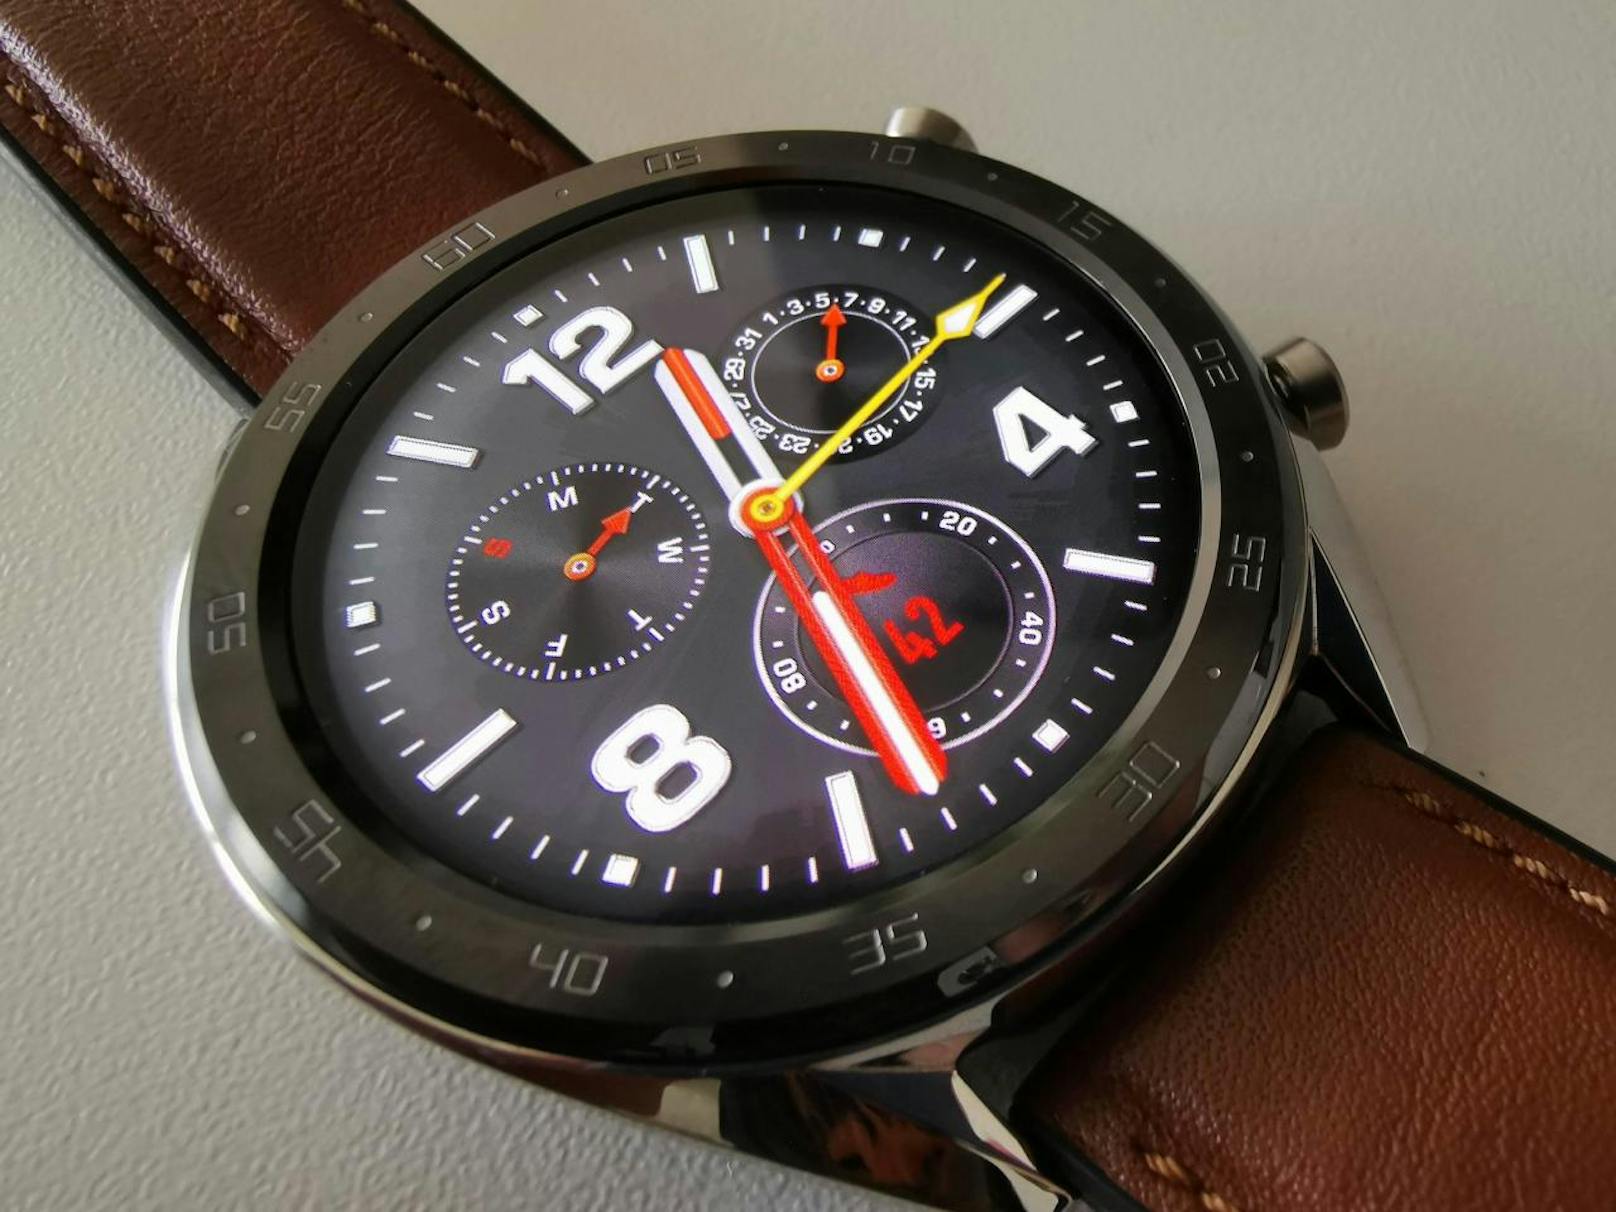 Klassische Smartwatch-Träger werden vielleicht enttäuscht sein, dass die Uhr keine digitalen Bezahlmöglichkeiten unterstützt, ...